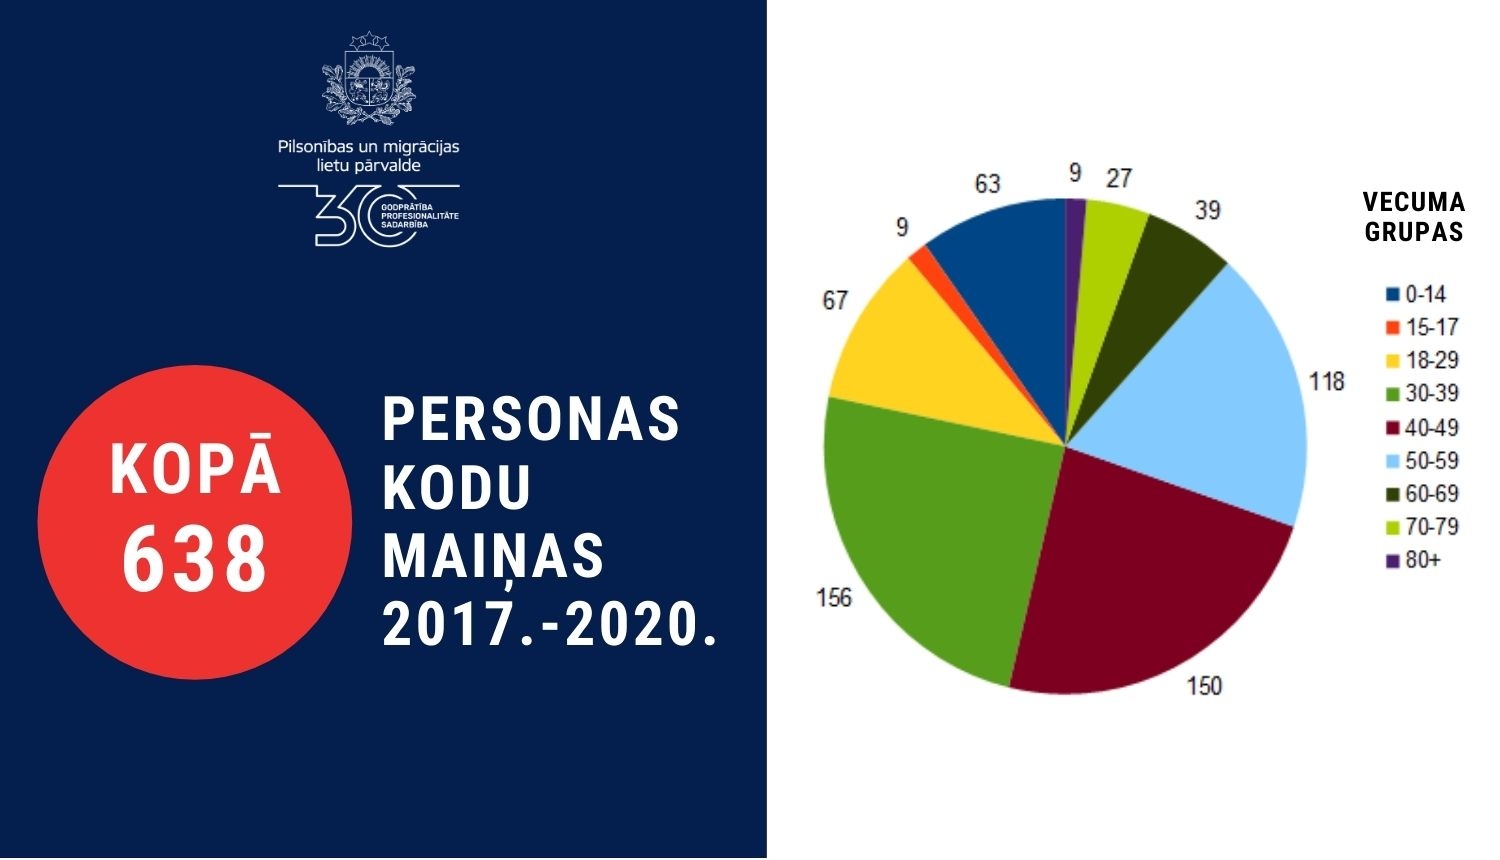 Personas kodu maiņa statistika grafikā 2017.-2020.gados